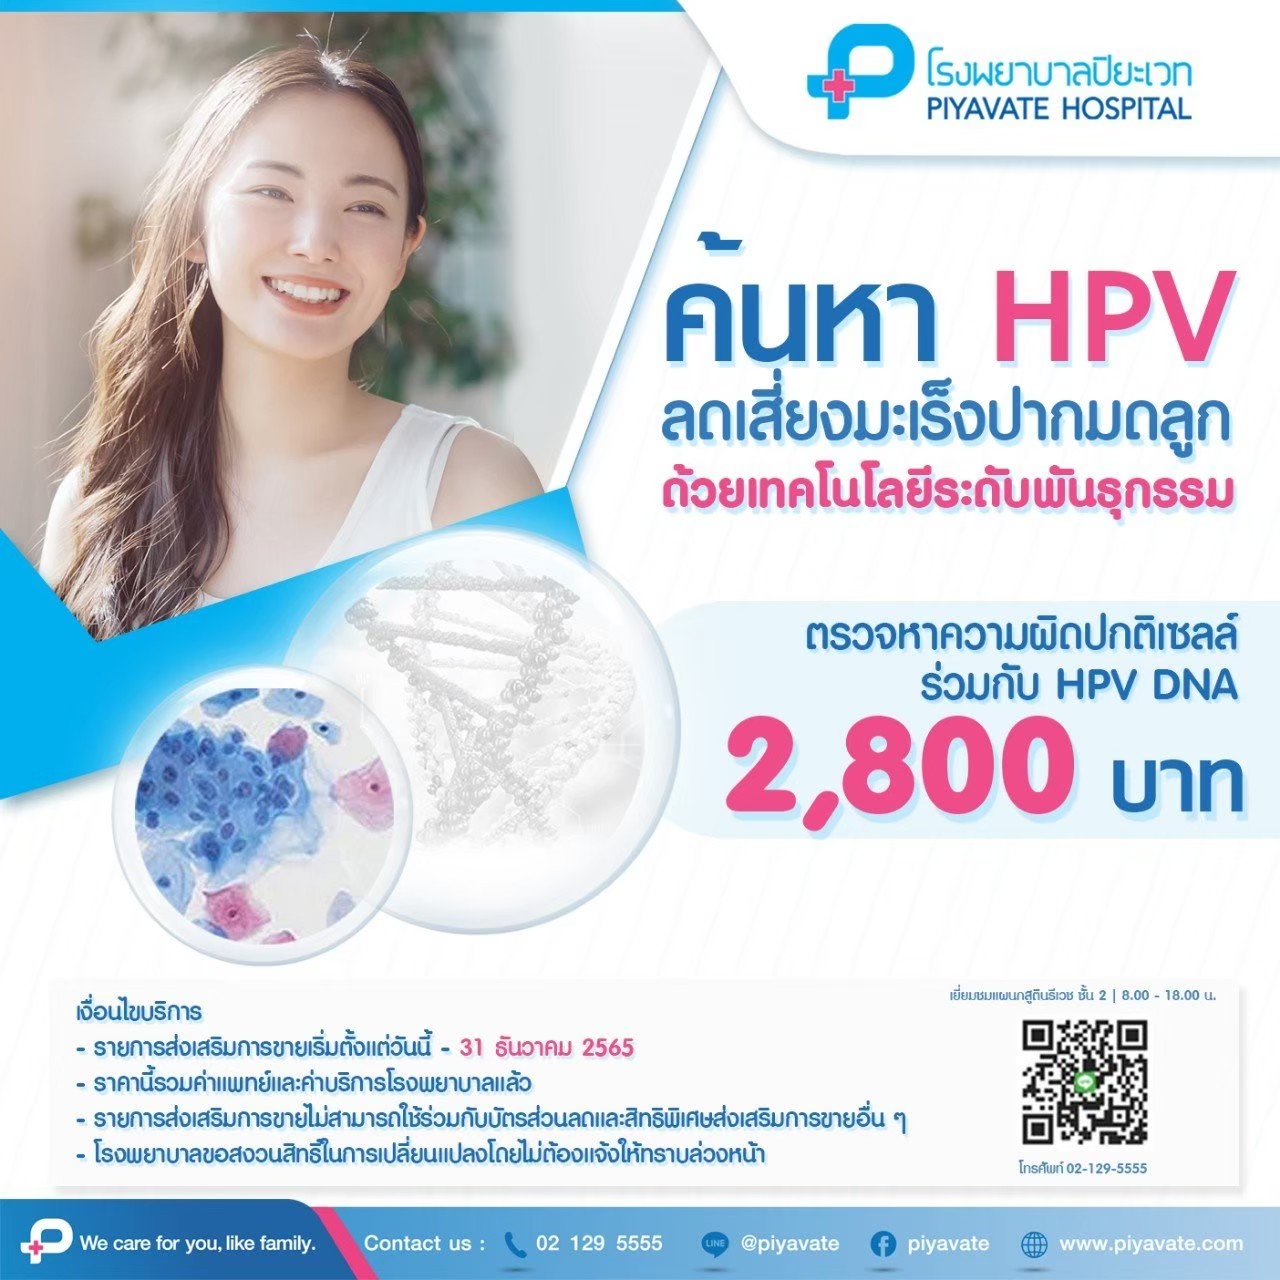 ค้นหาเชื้อไวรัส HPV